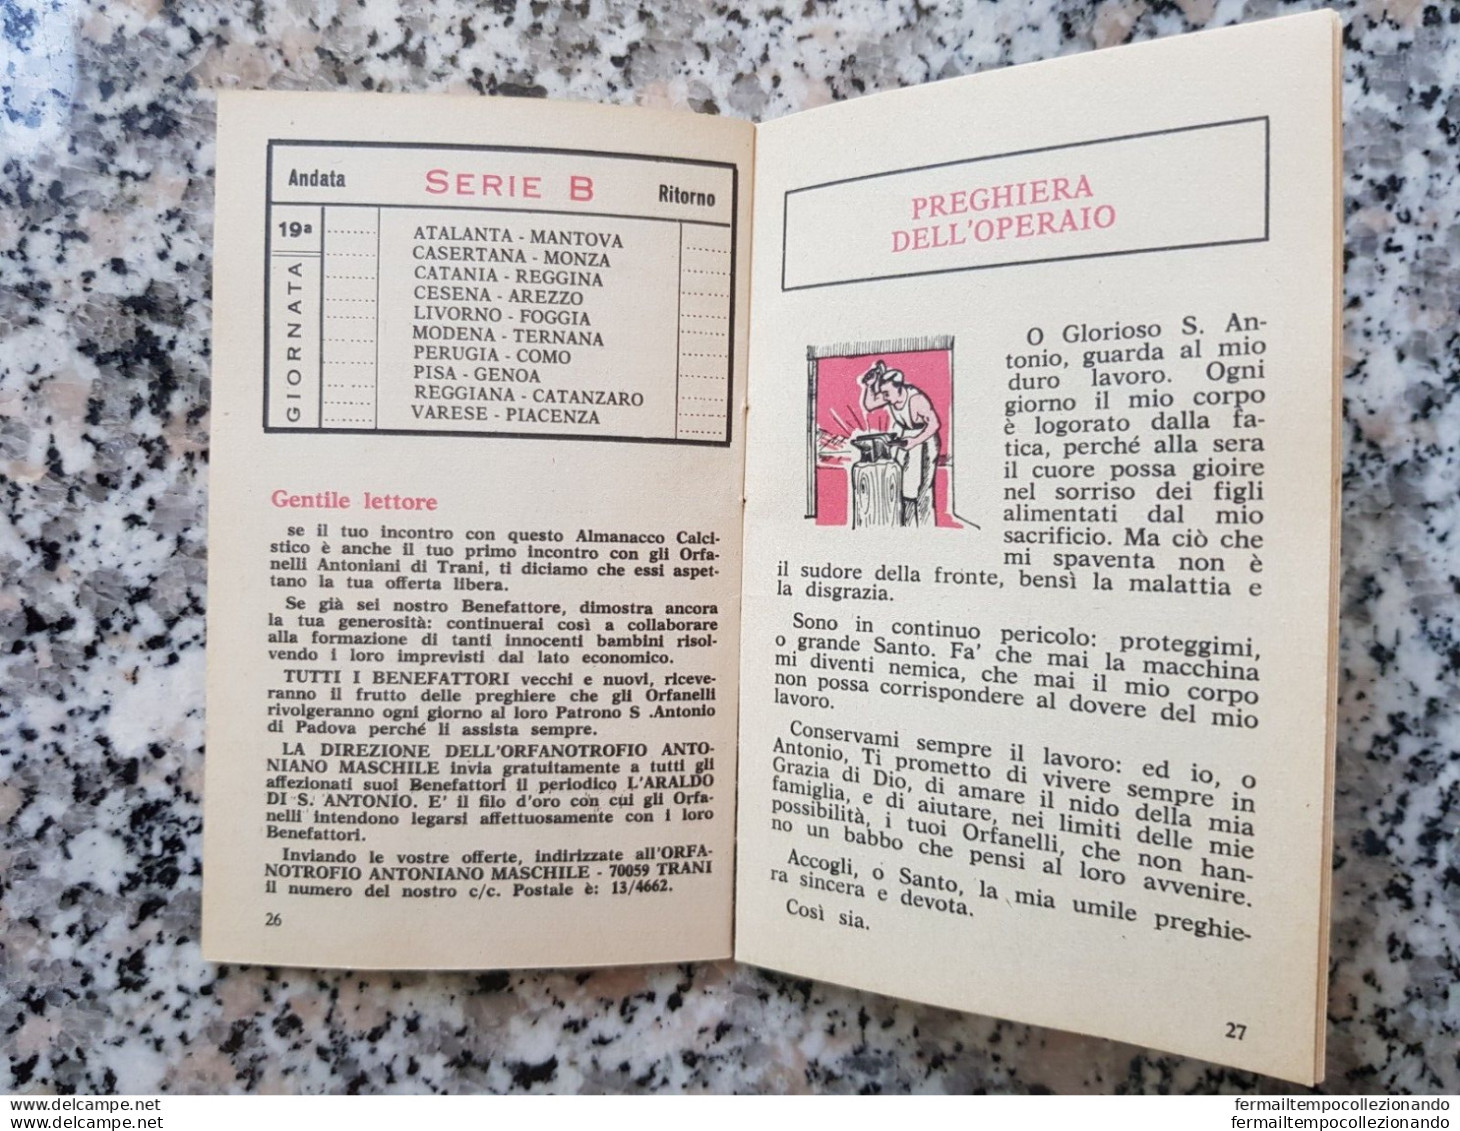 bp2 almanacco calcistico 1969-1970 rilegato con libretto s.antonio